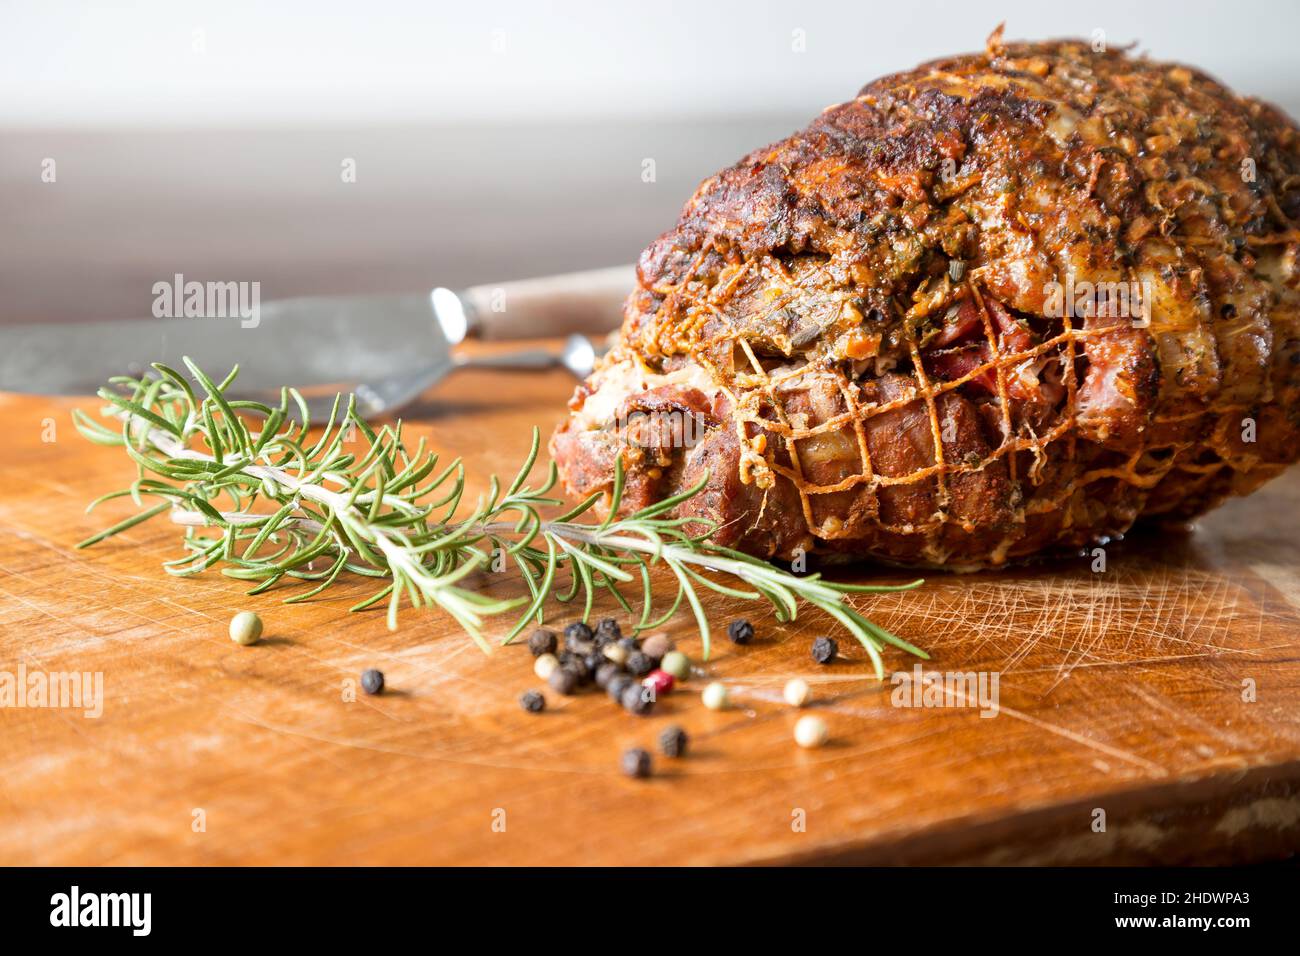 roast dinner, roast pork, traditional cuisine, roast dinners, roast porks Stock Photo